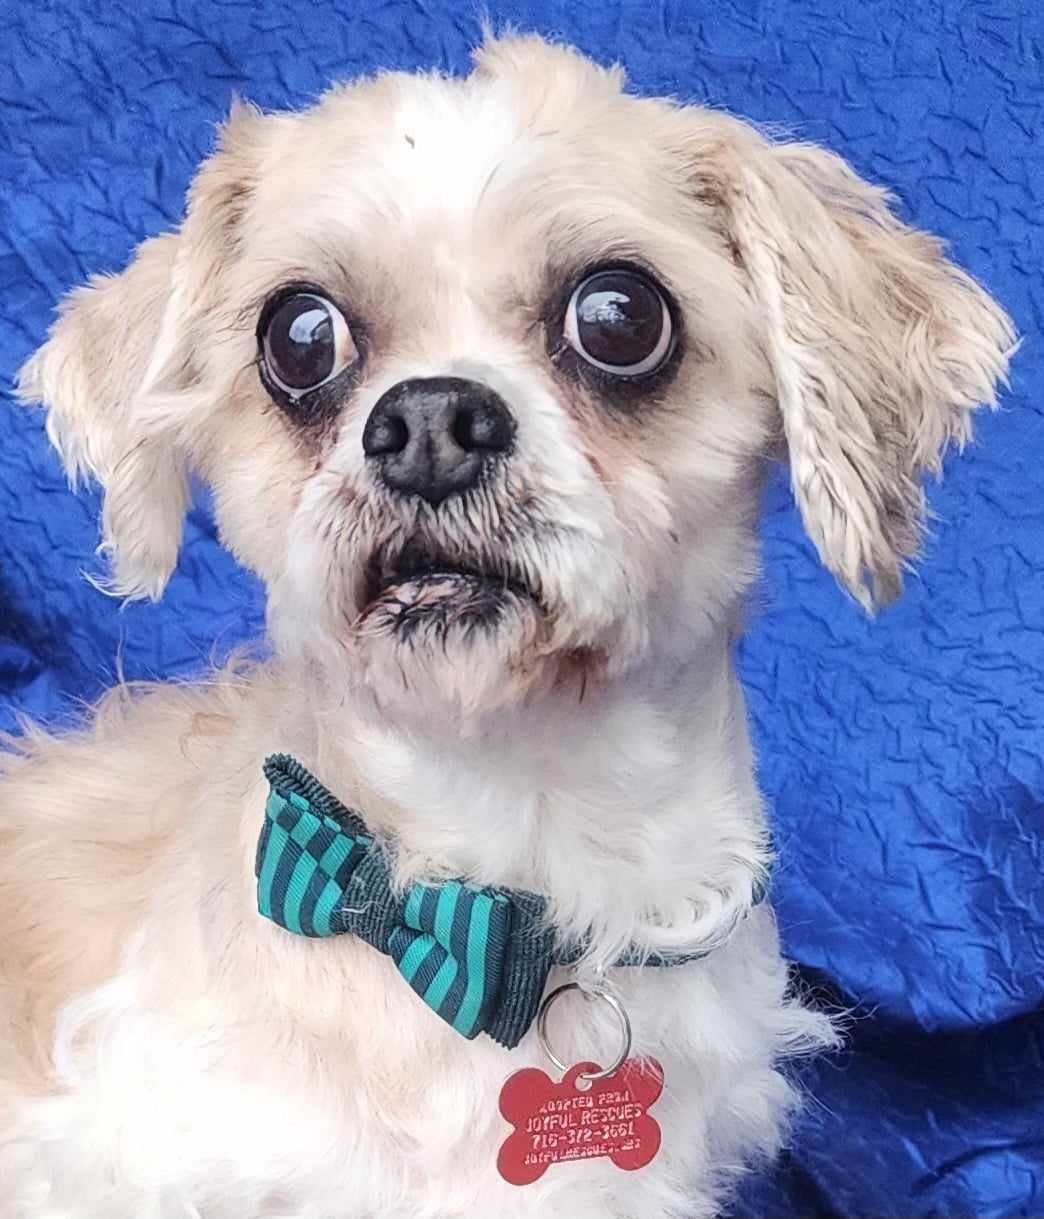 adoptable Dog in Cuba, NY named Chief Tzu